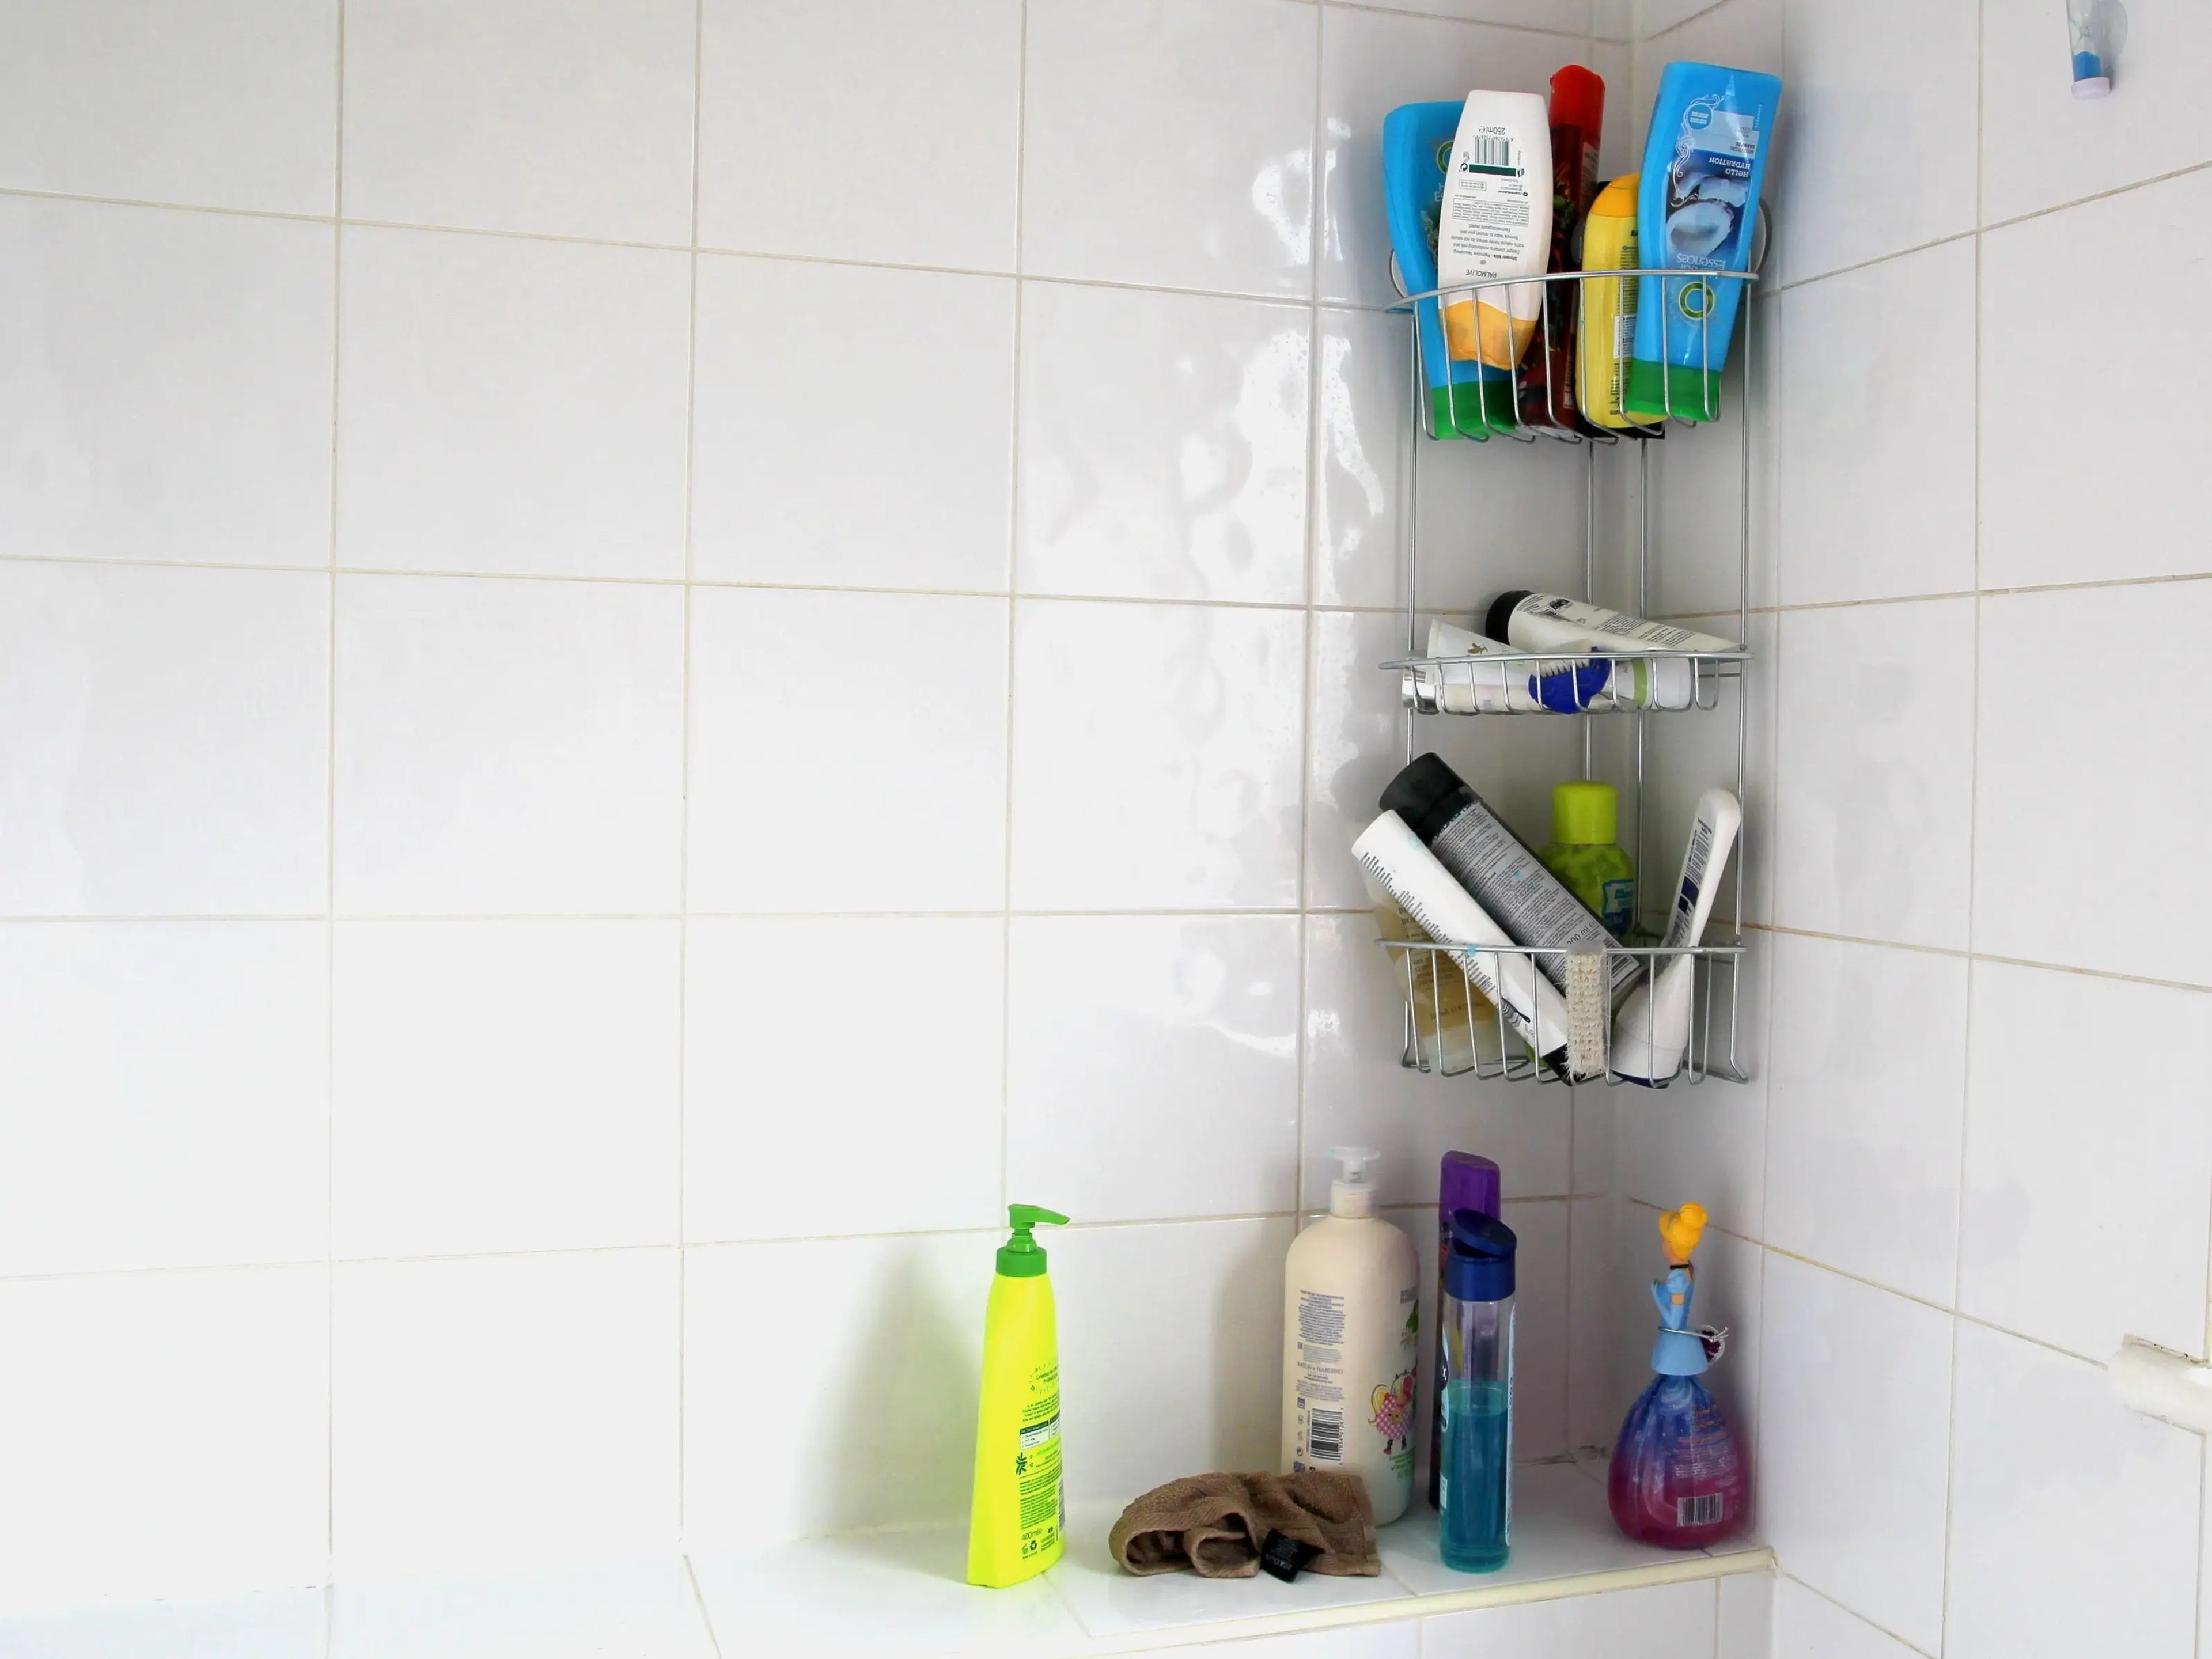 Productos de champú y gel de ducha en un cuarto de baño.